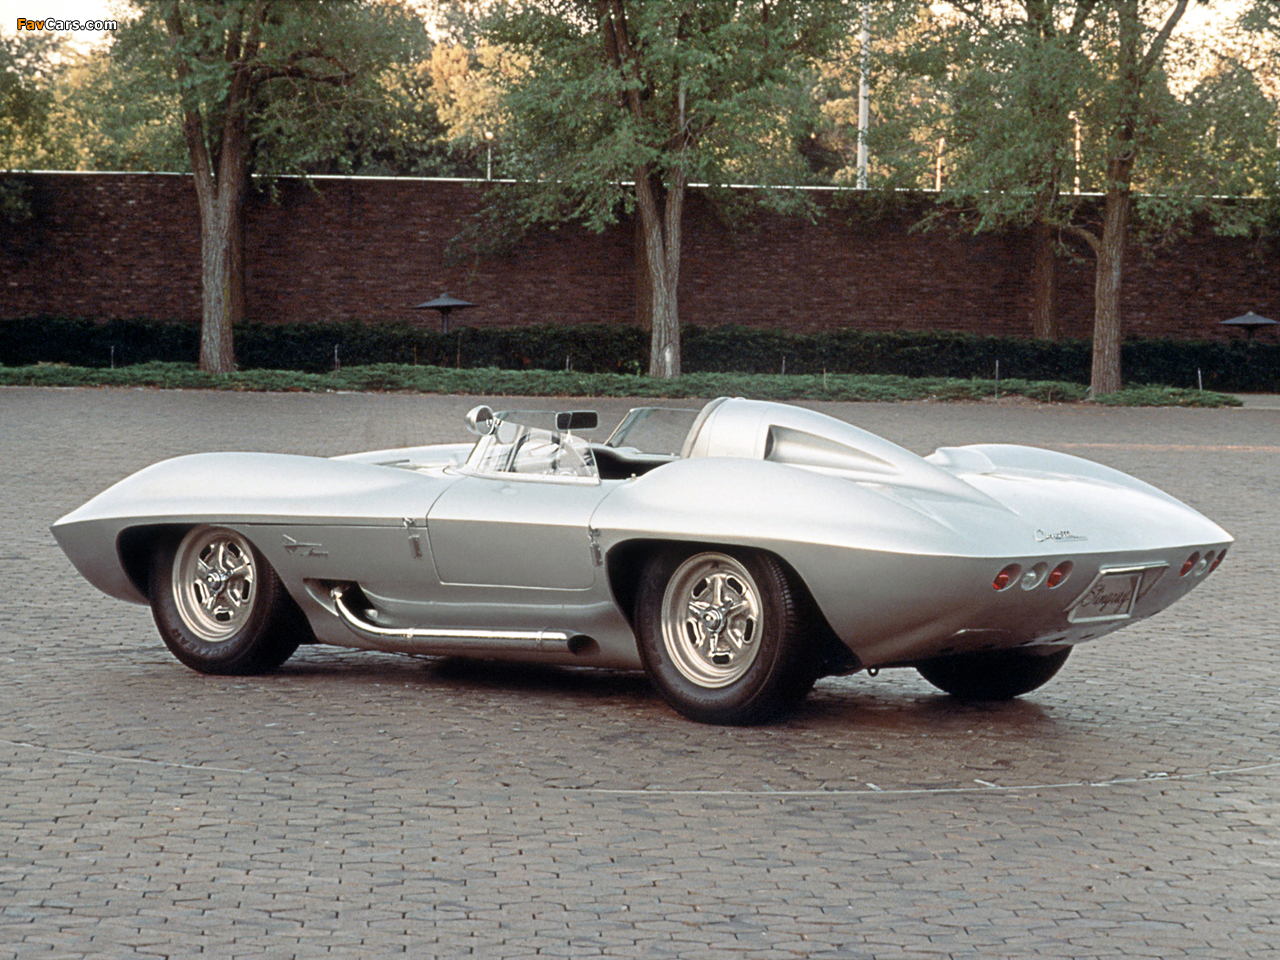 Images of Corvette Stingray Racer Concept Car 1959 (1280 x 960)